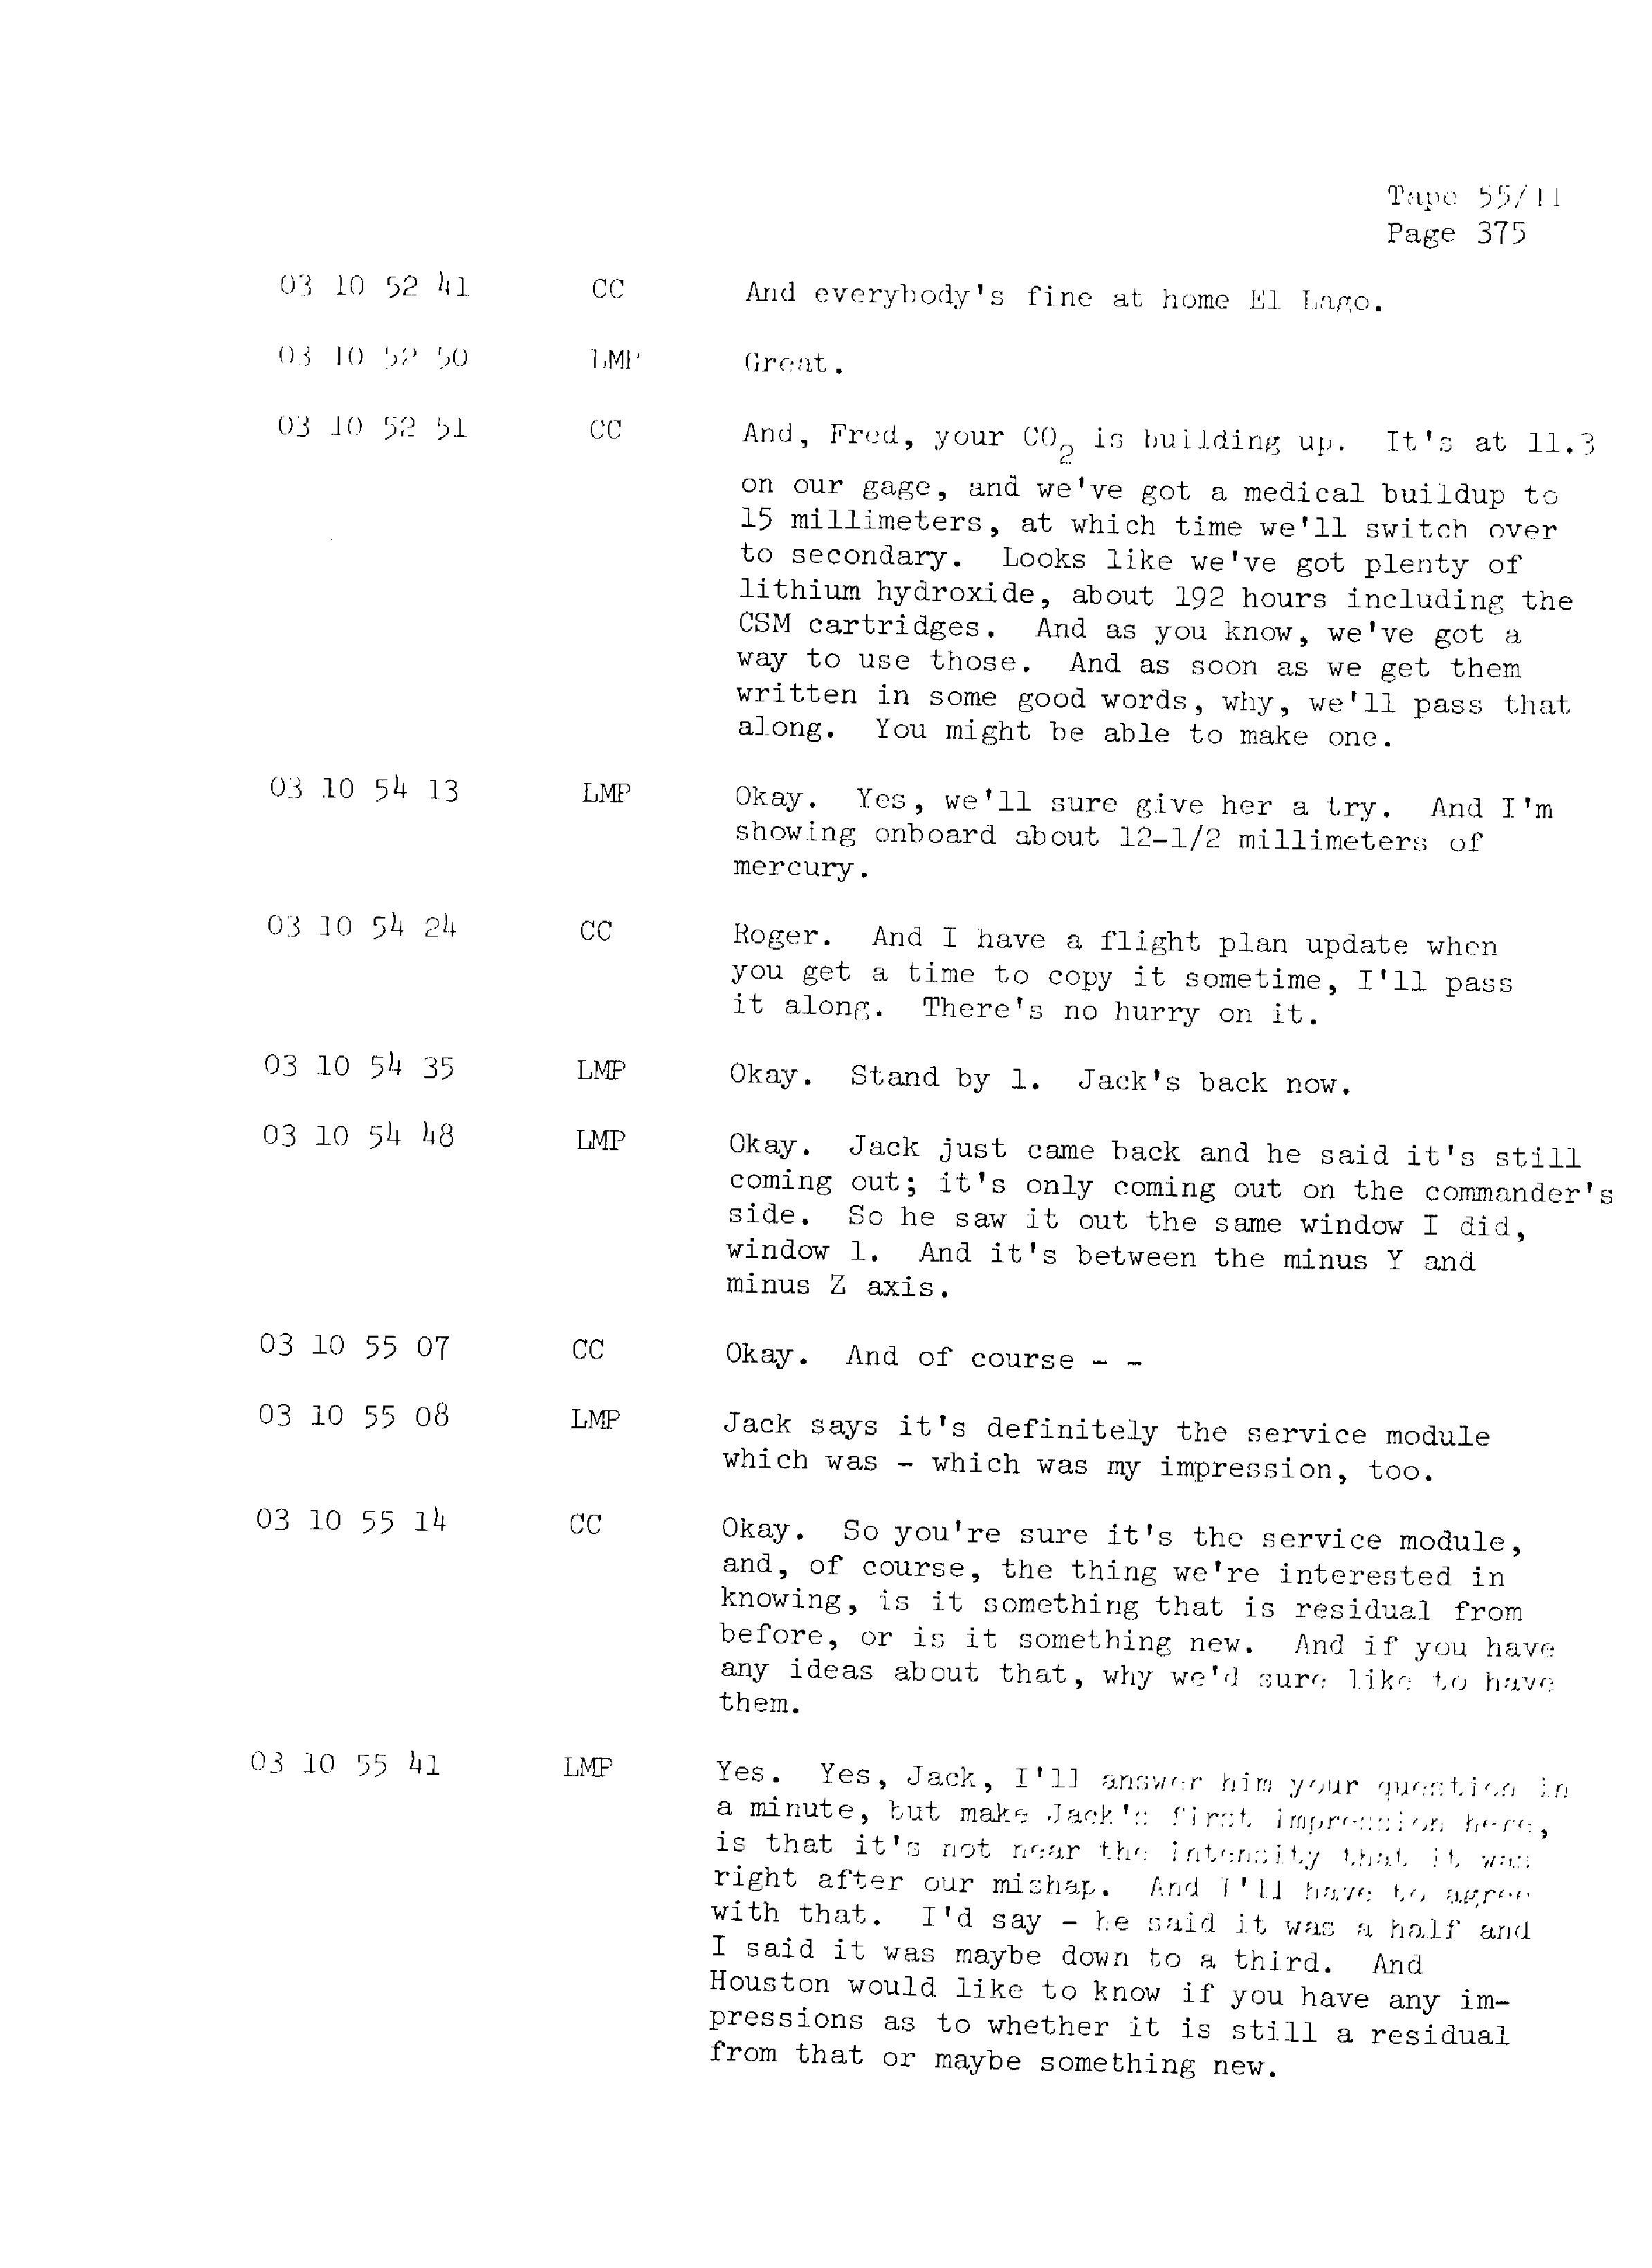 Page 382 of Apollo 13’s original transcript